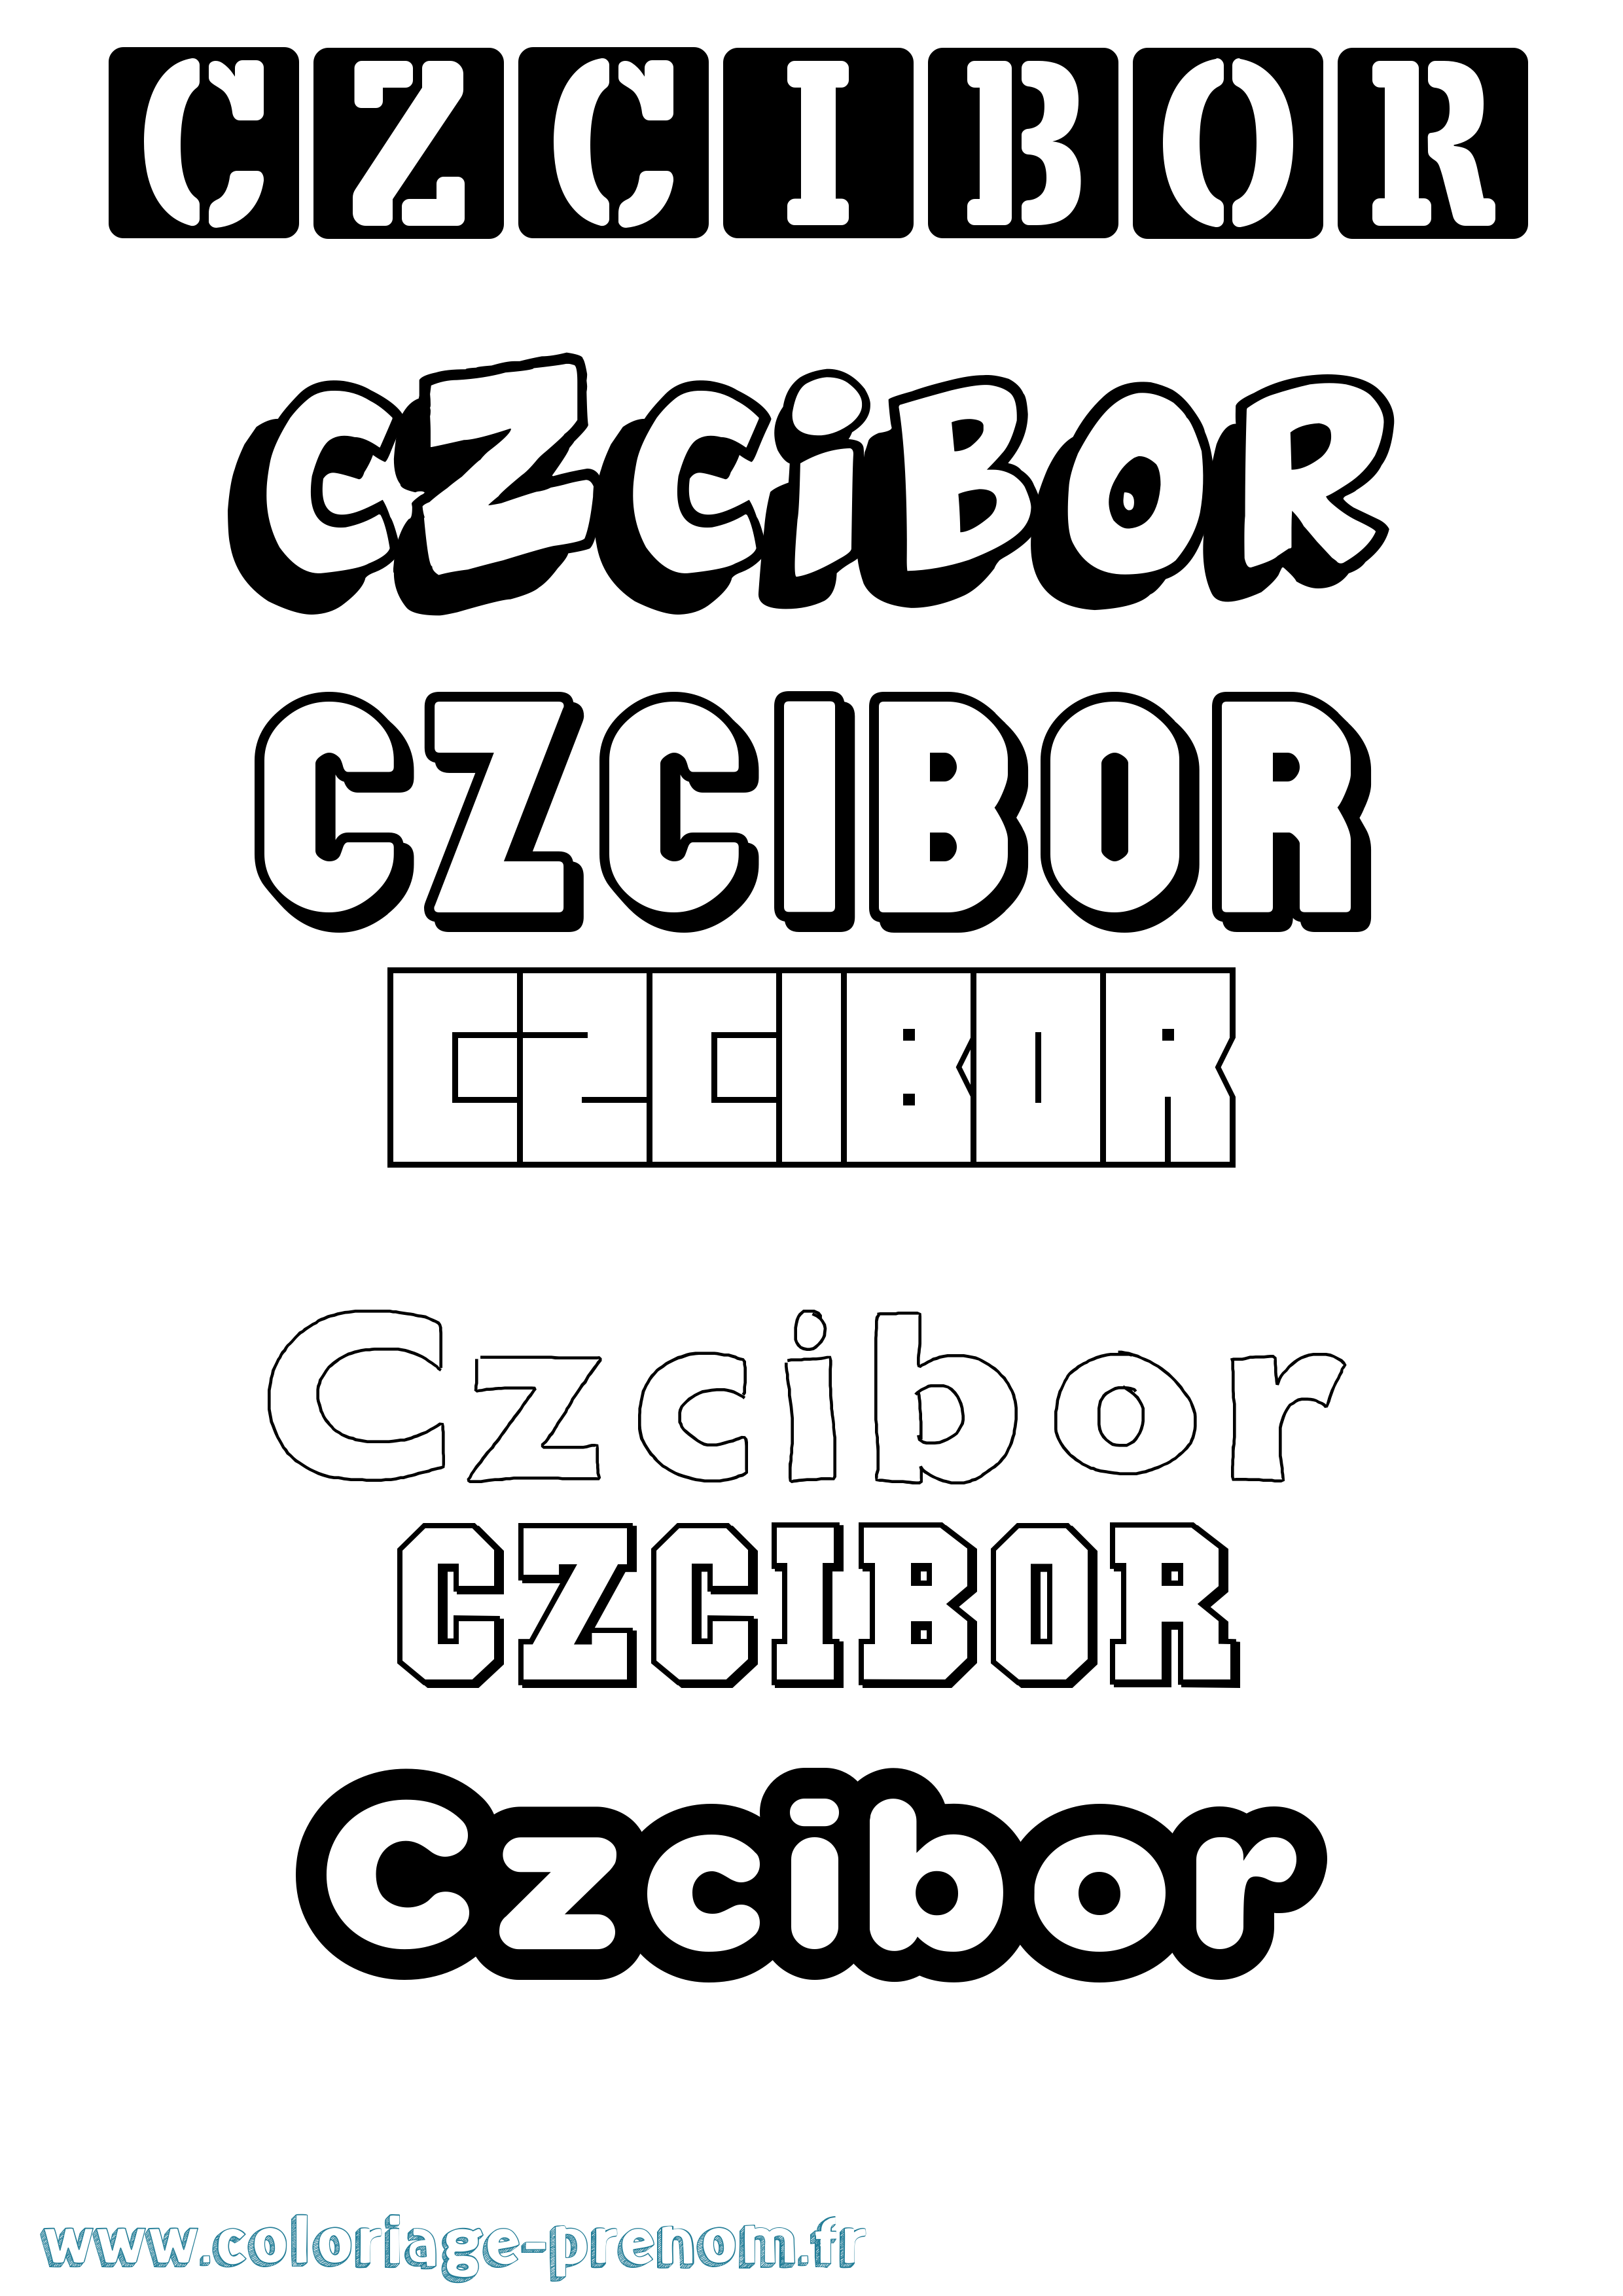 Coloriage prénom Czcibor Simple